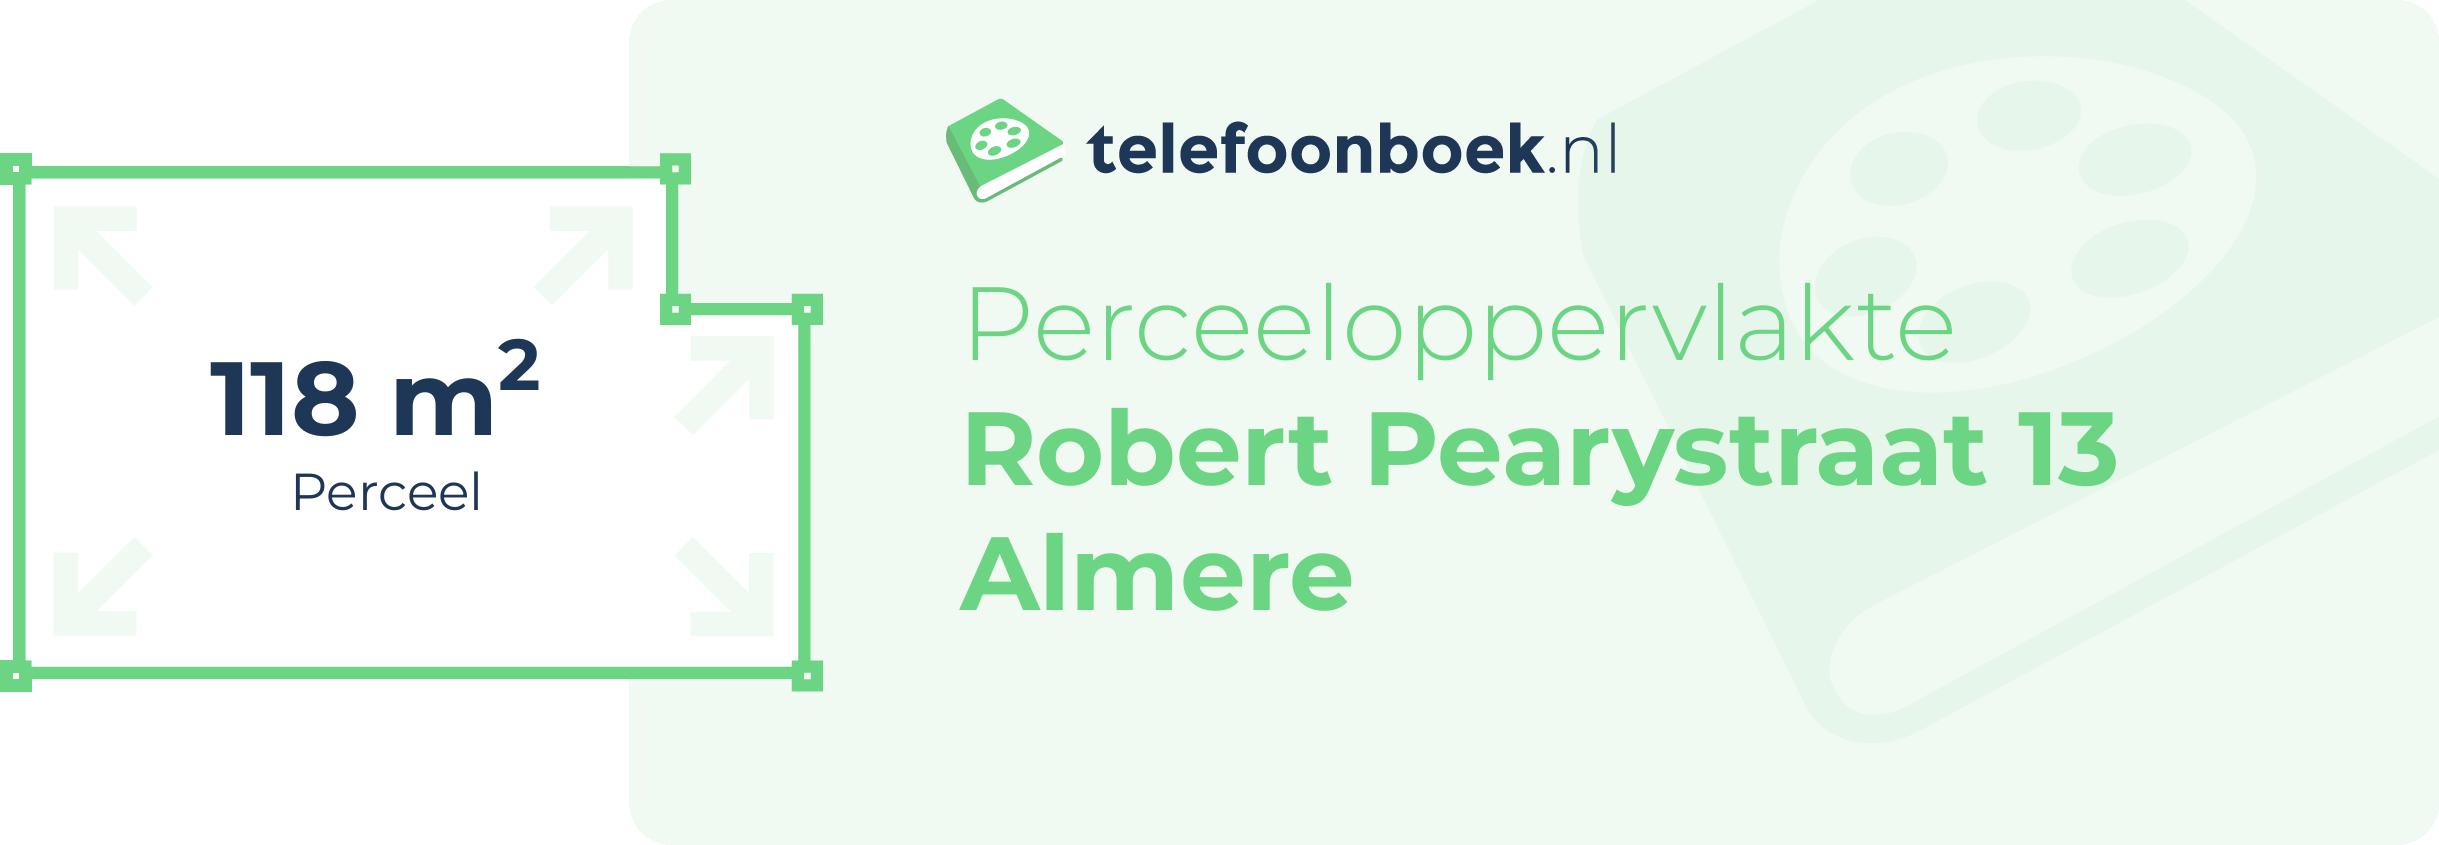 Perceeloppervlakte Robert Pearystraat 13 Almere